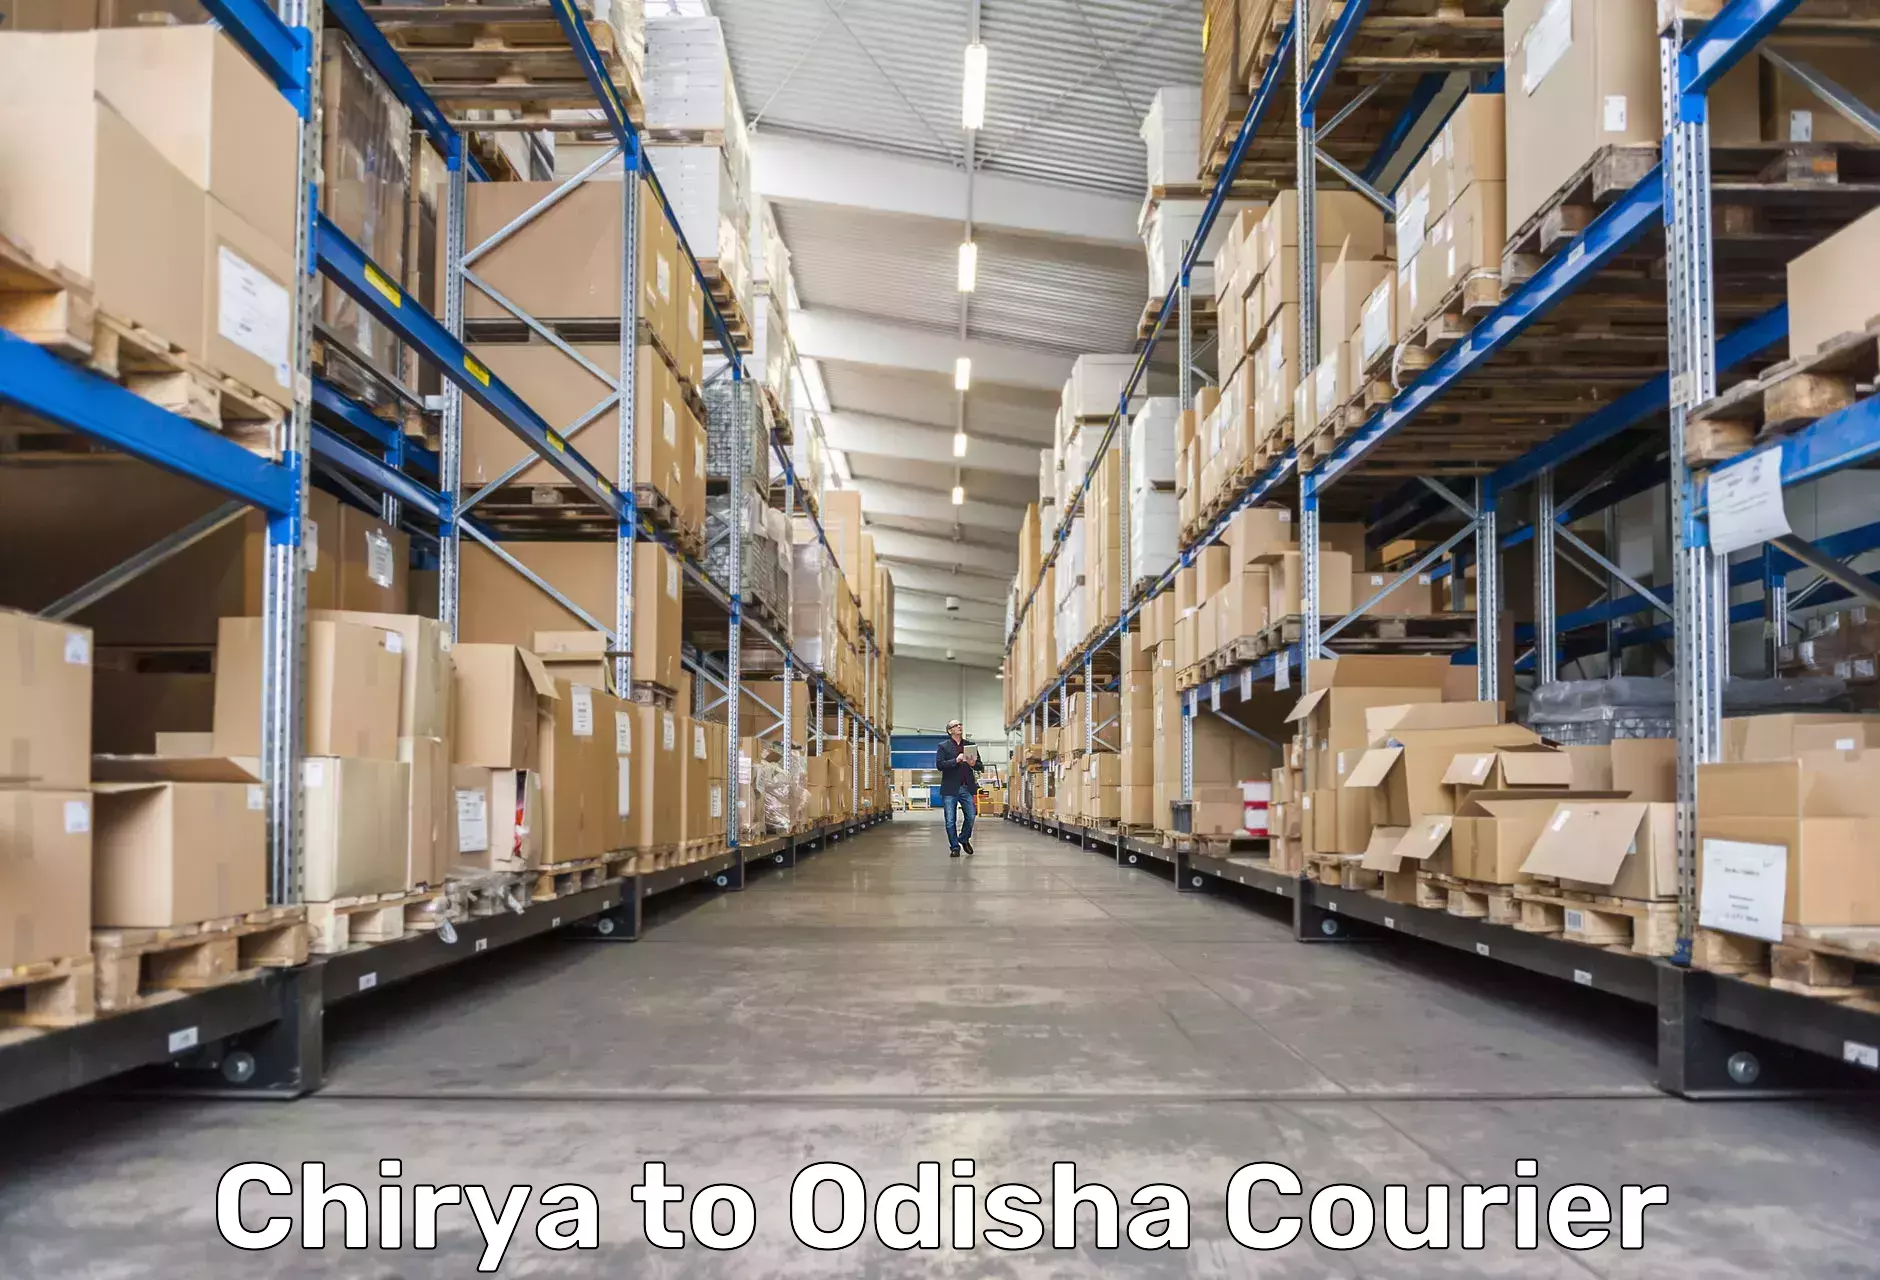 Express courier capabilities Chirya to Hinjilicut